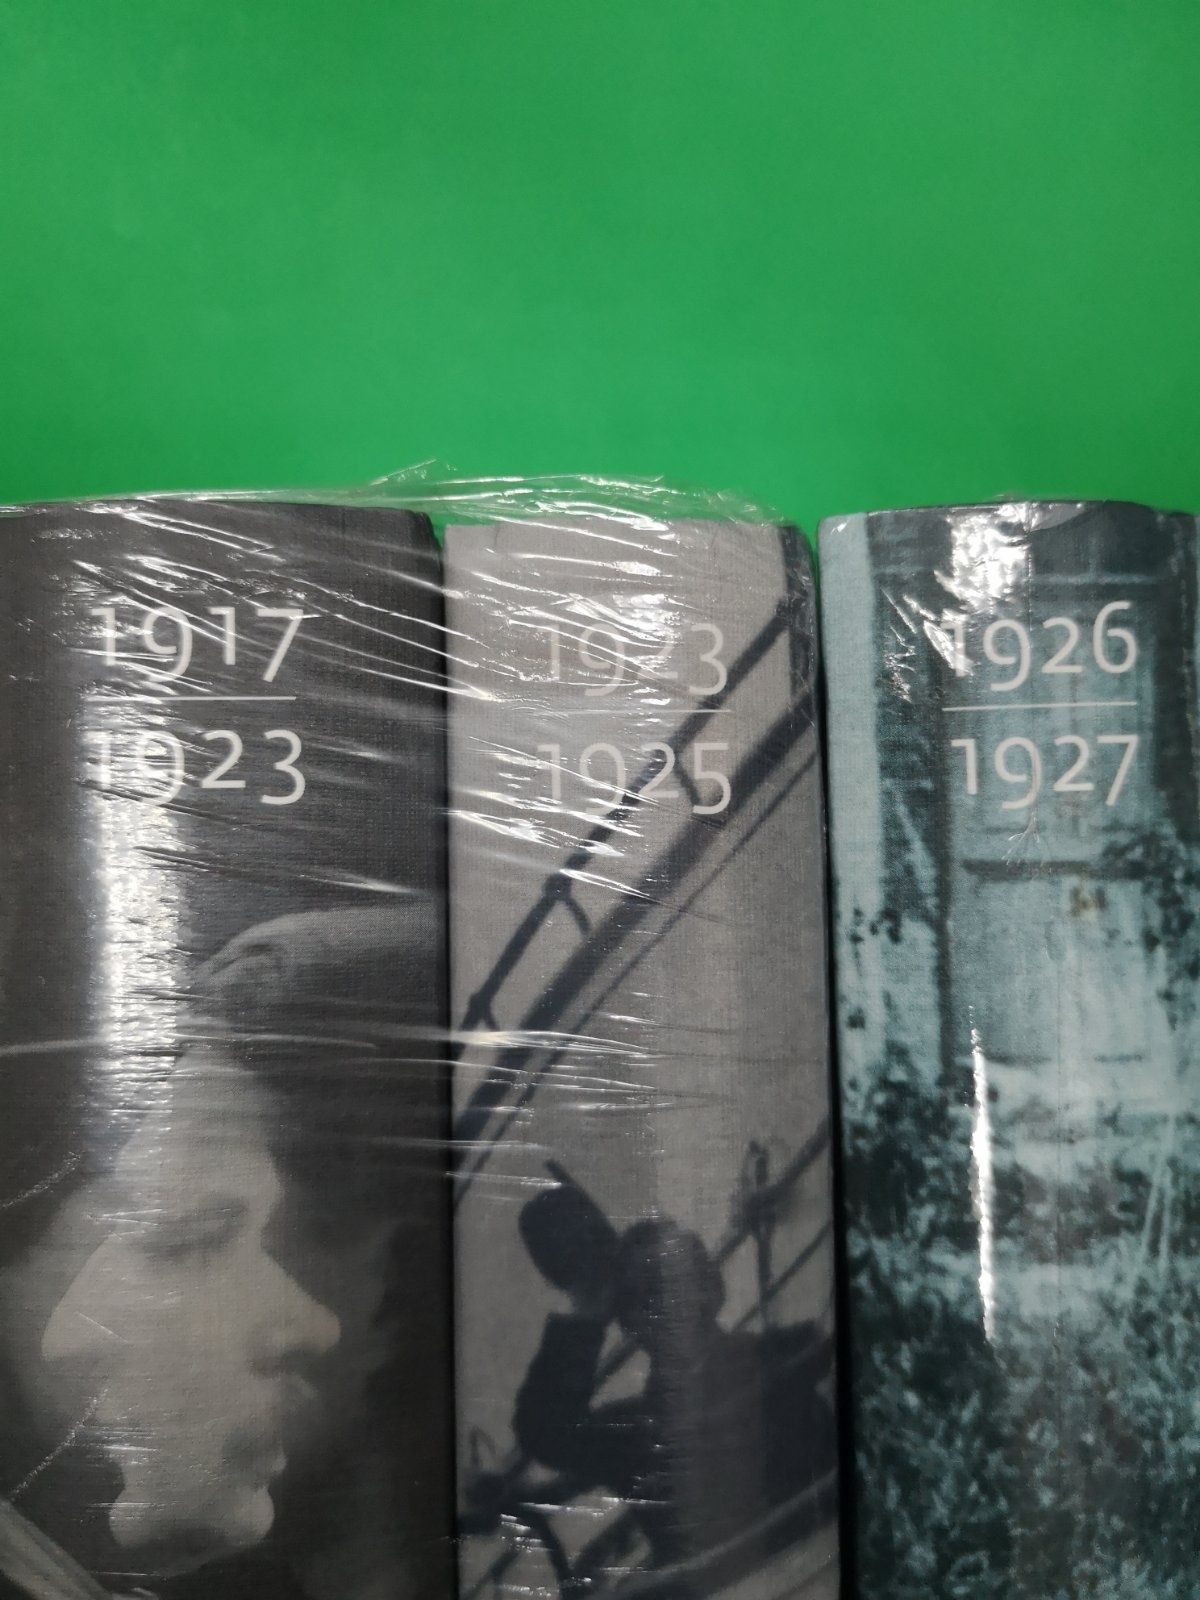 Константин Сомов "Дневник" (1917-1923, 1923-1925, 1926-1927), 3 тома